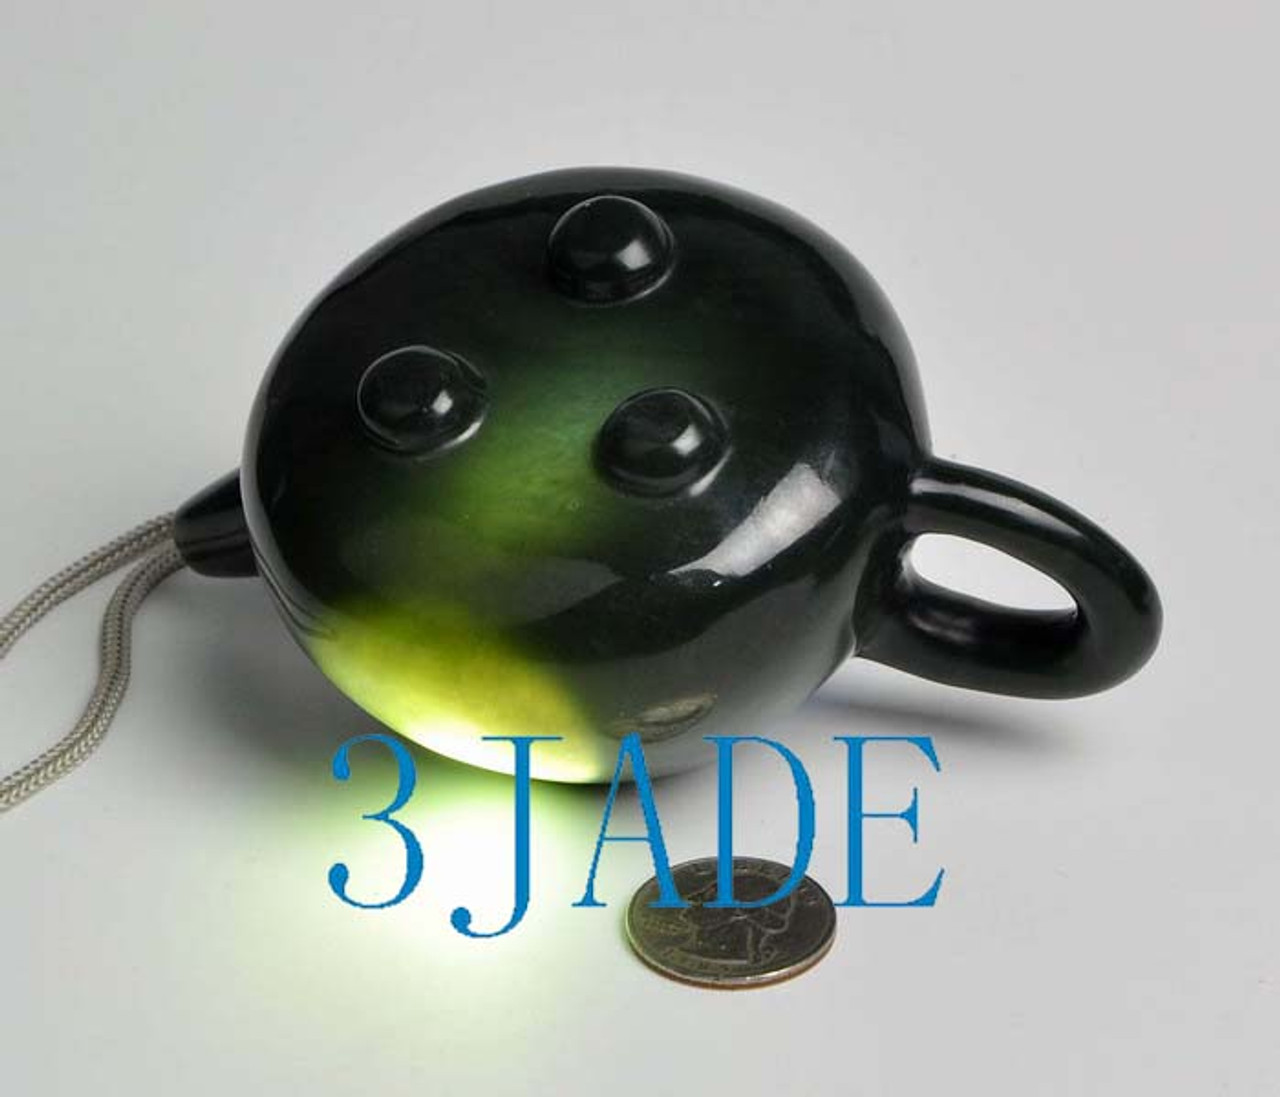 stone teapot